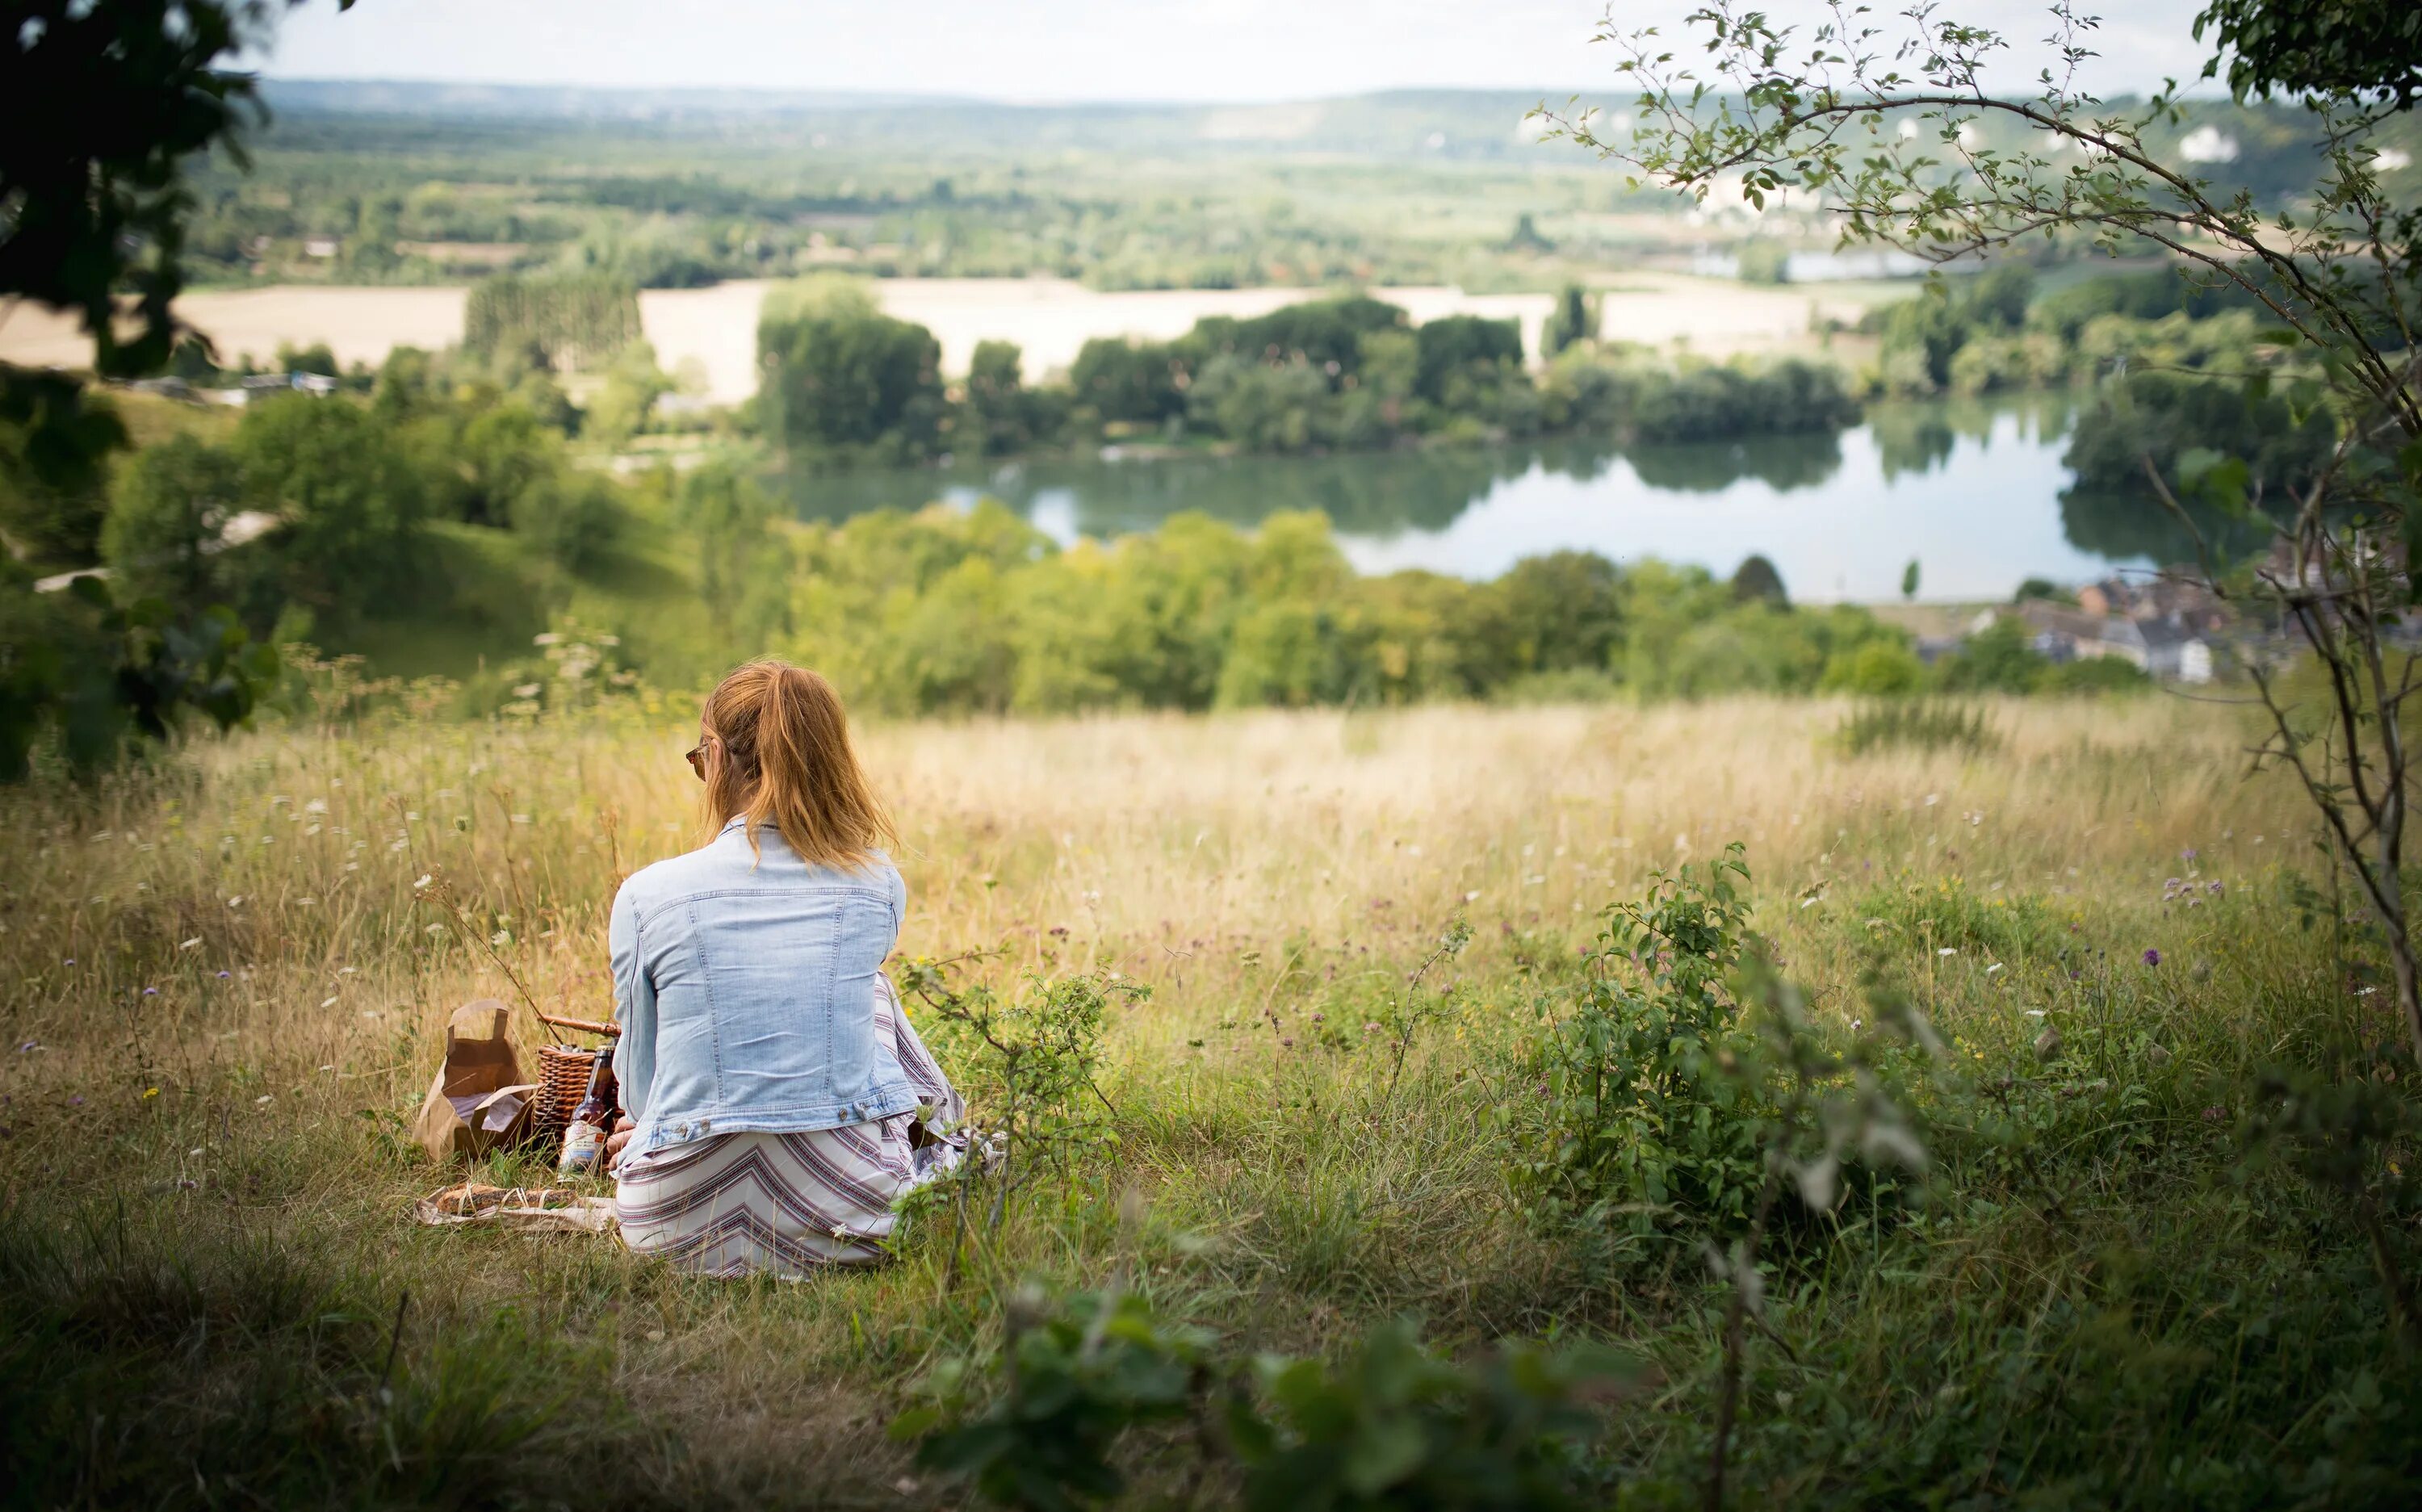 Портрет на природе. Летний пейзаж с девочкой. Человек сидит на природе. Идеи для фото на природе. Красоту сидели люди